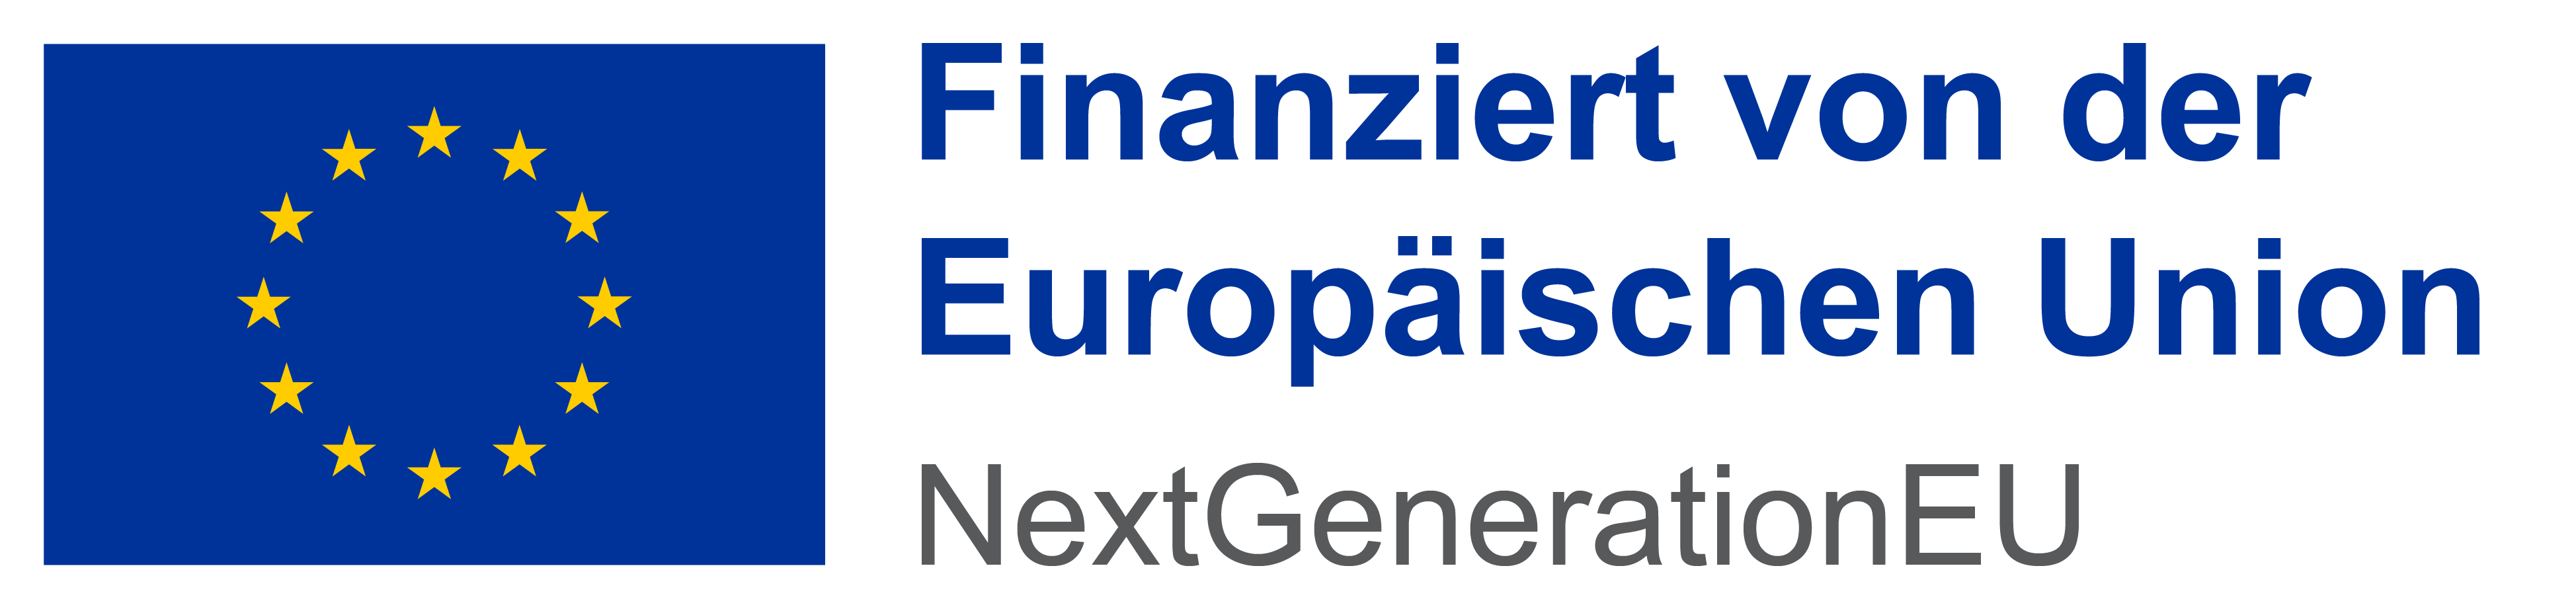 Logo EU nextgeneration